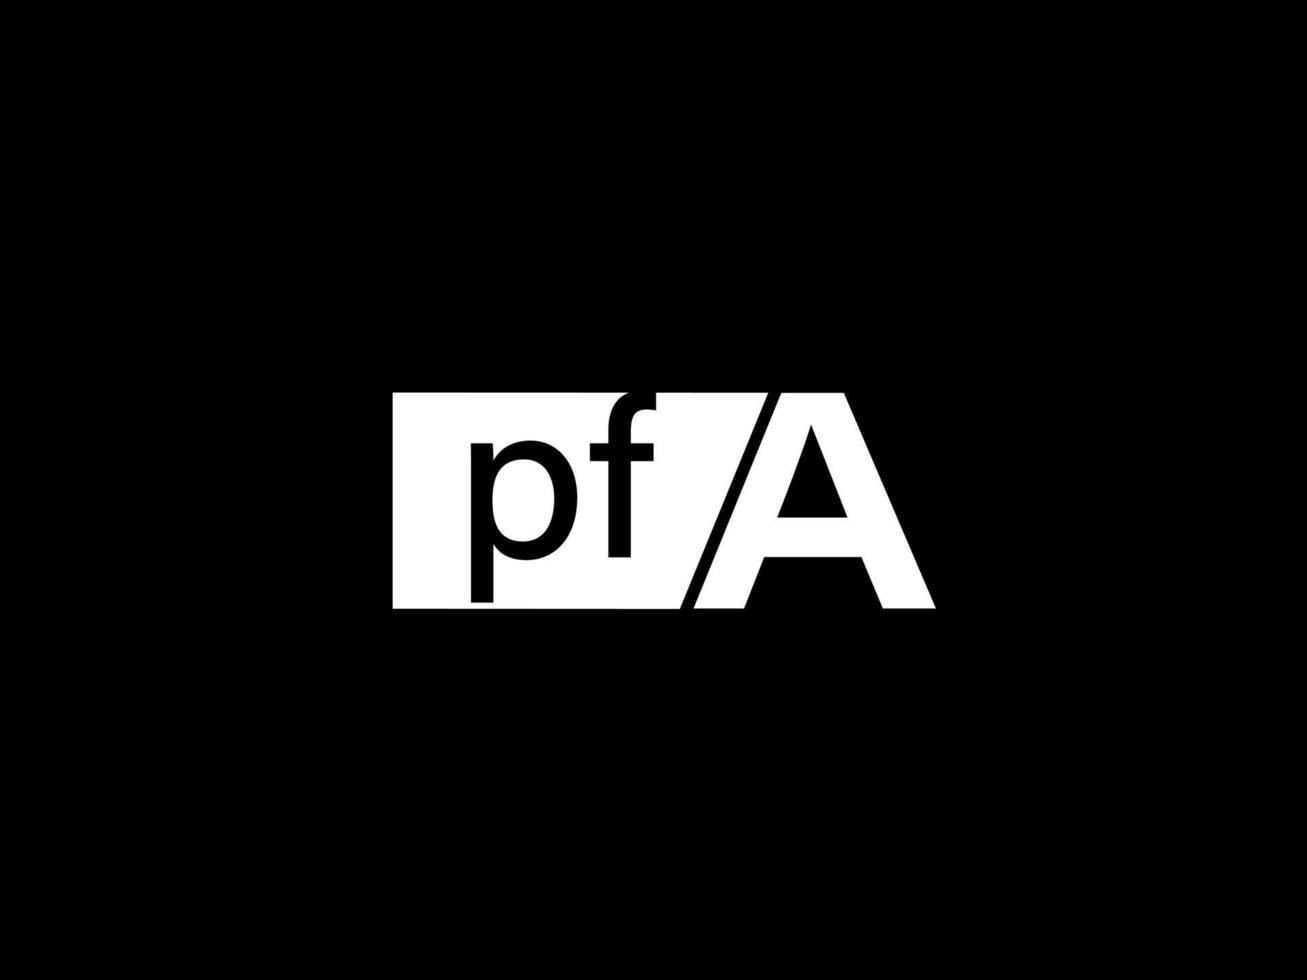 pfa-Logo und Grafikdesign Vektorgrafiken, Symbole isoliert auf schwarzem Hintergrund vektor